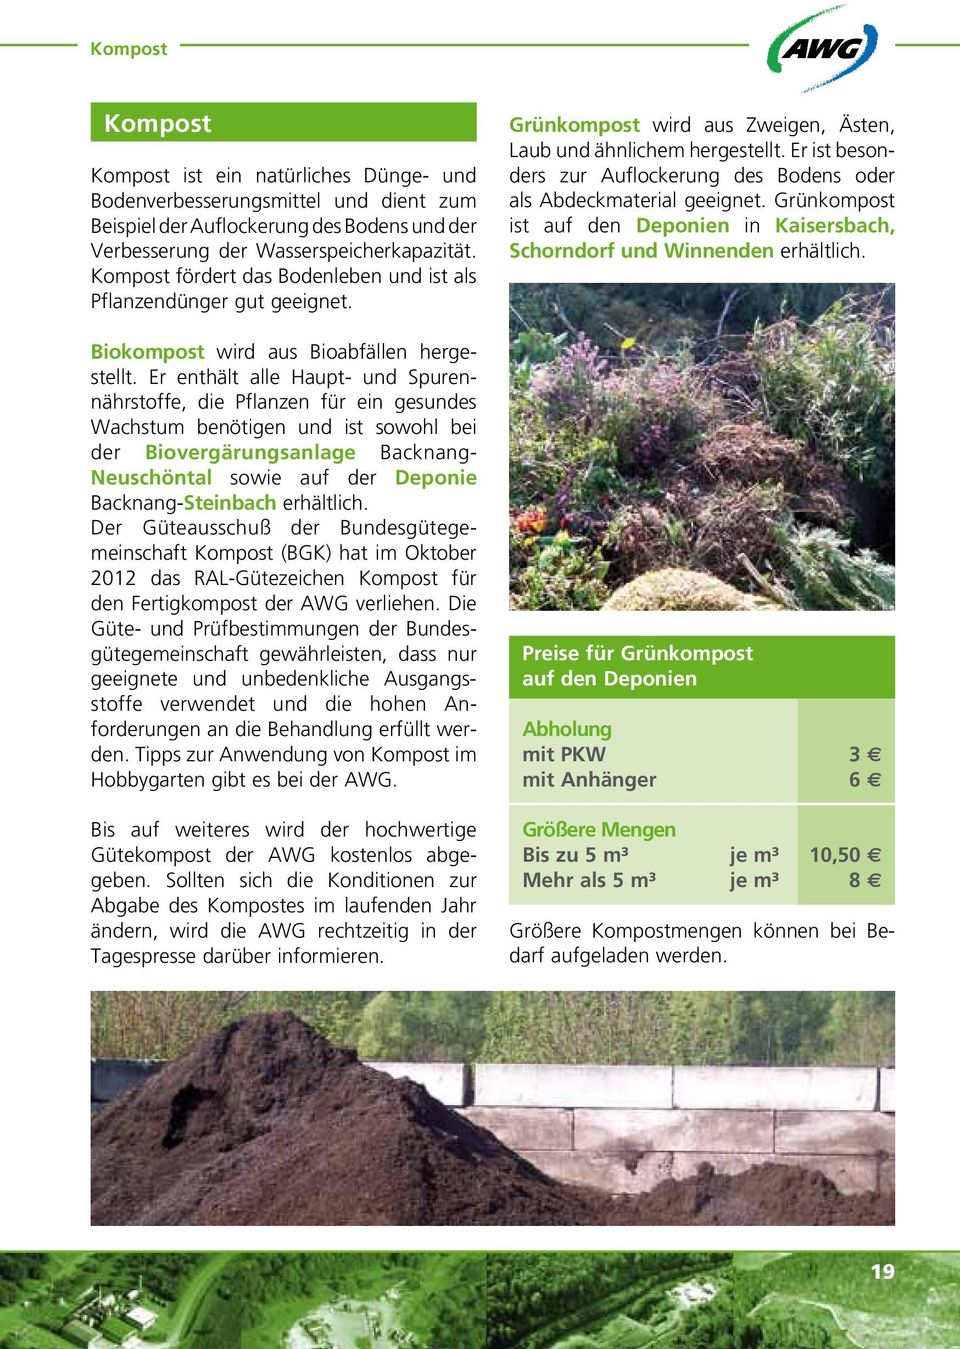 Er ist besonders zur Auflockerung des Bodens oder als Abdeckmaterial geeignet. Grünkompost ist auf den Deponien in Kaisersbach, Schorndorf und Winnenden erhältlich.